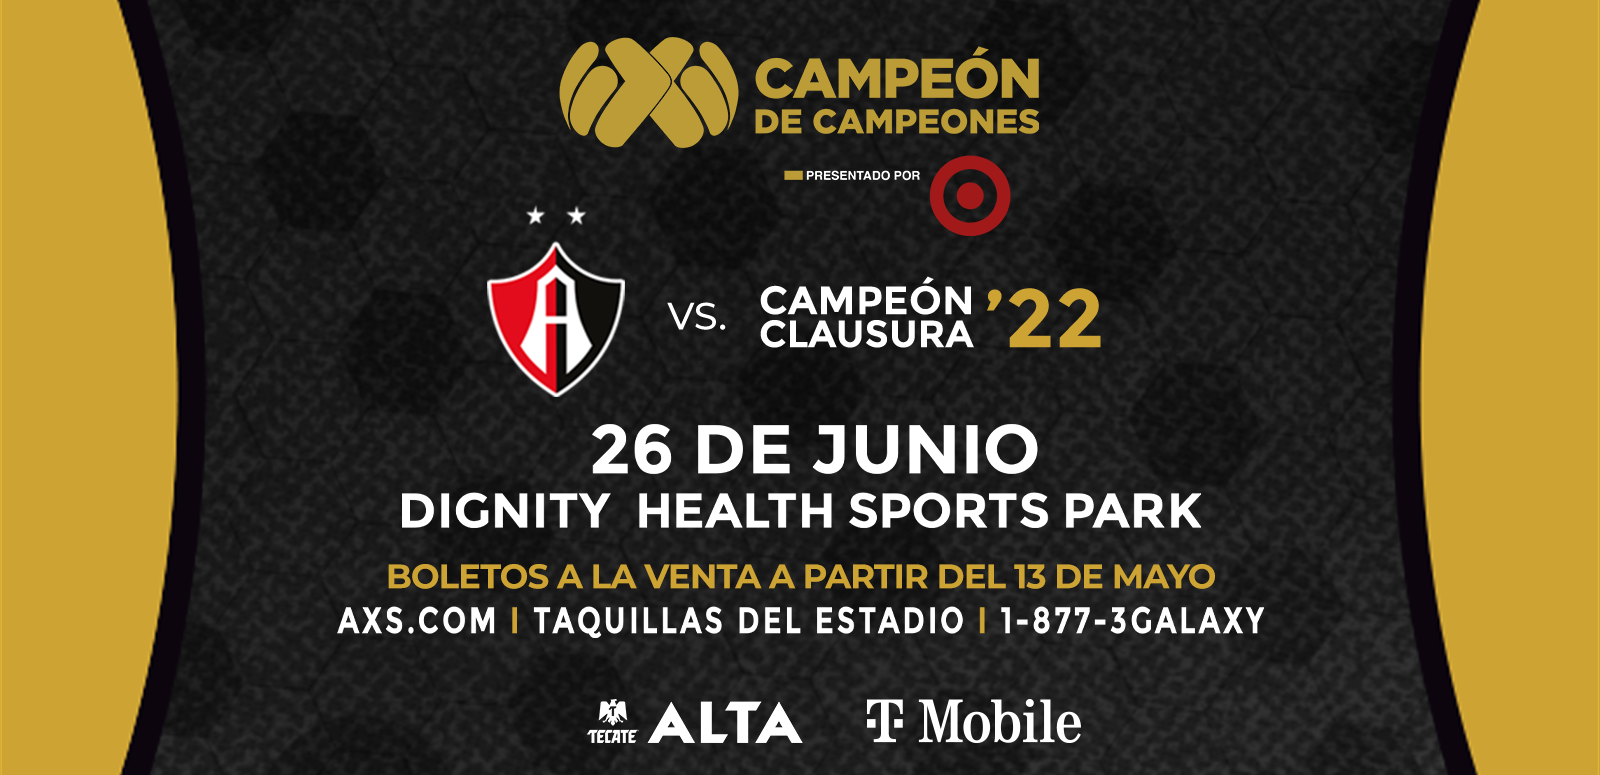 Dignity Health Sports Park to Host the 7th Edition of Campeón de Campeones Presentado por Target on Sunday, June 26